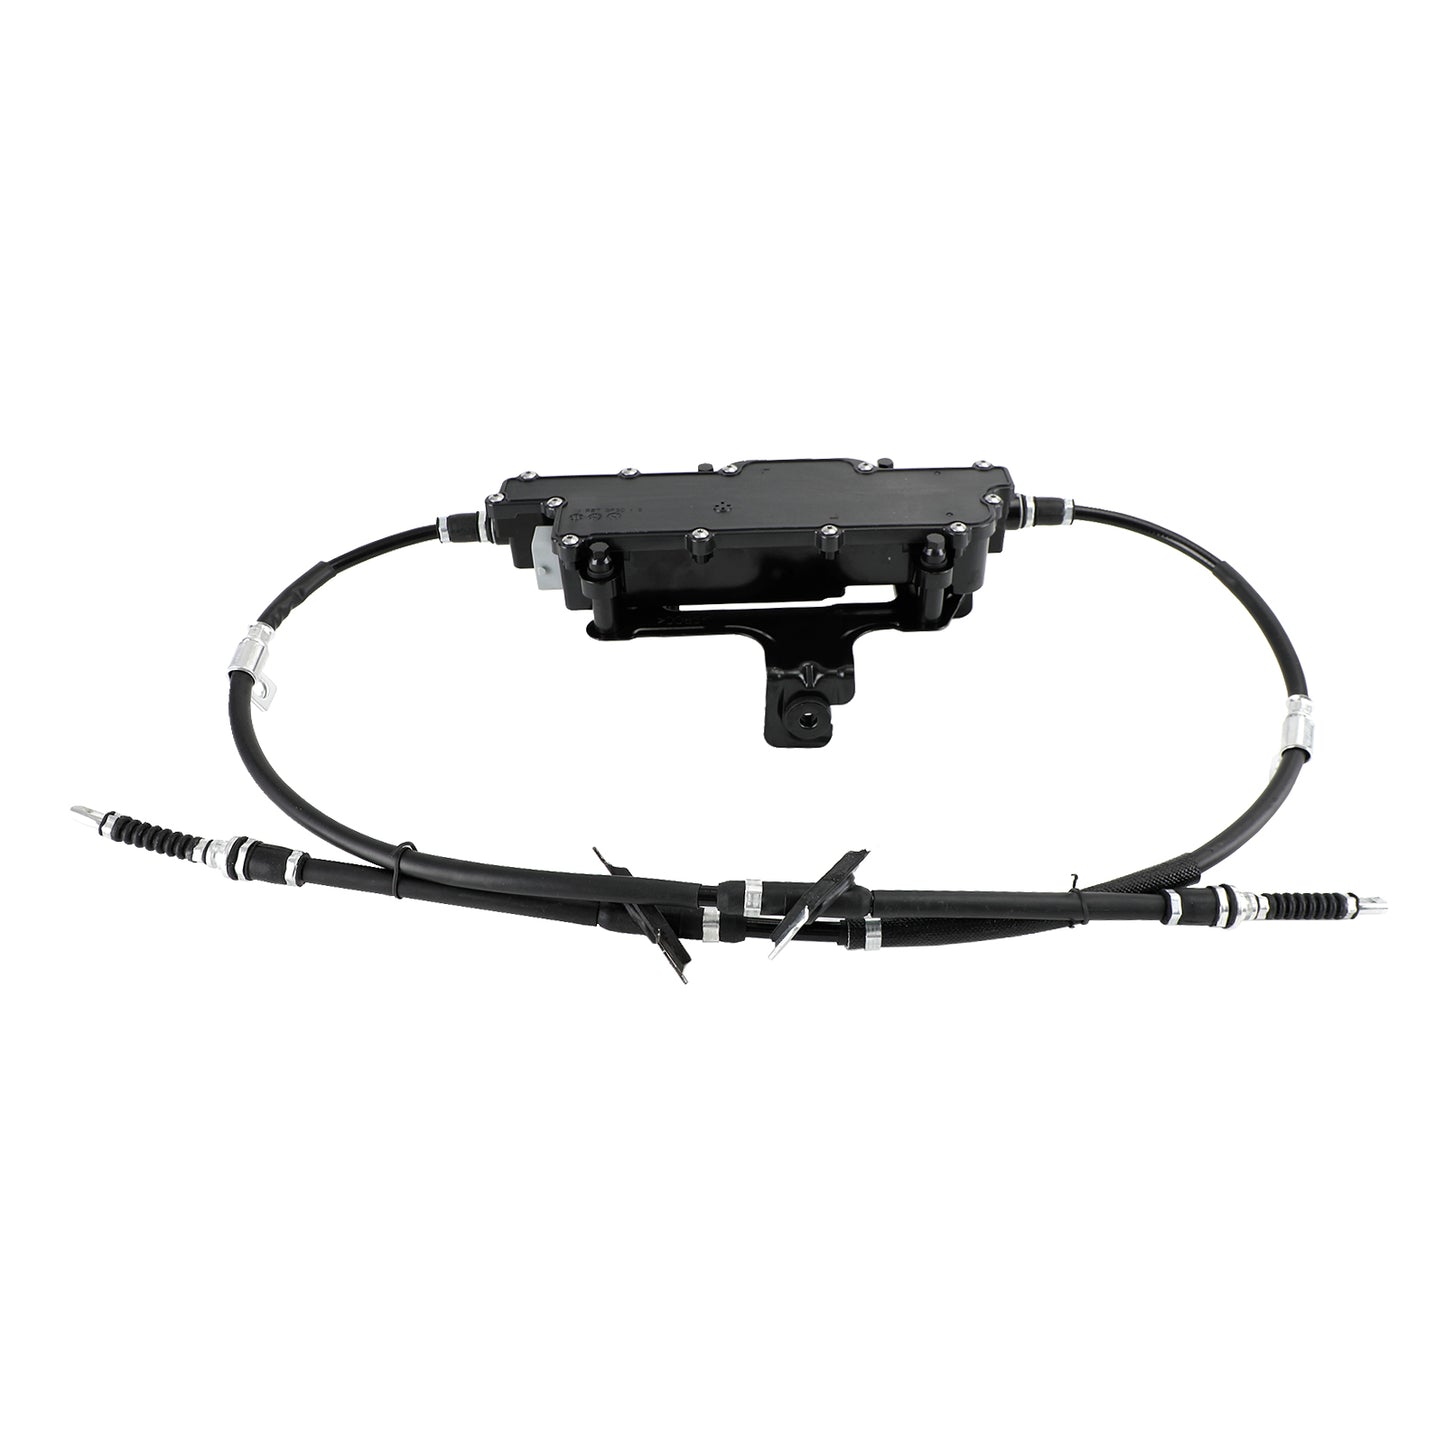 2012-2019 Hyundai SantaFE 2WD Parking Brake Handbrake Actuator Control Module 59700B8700